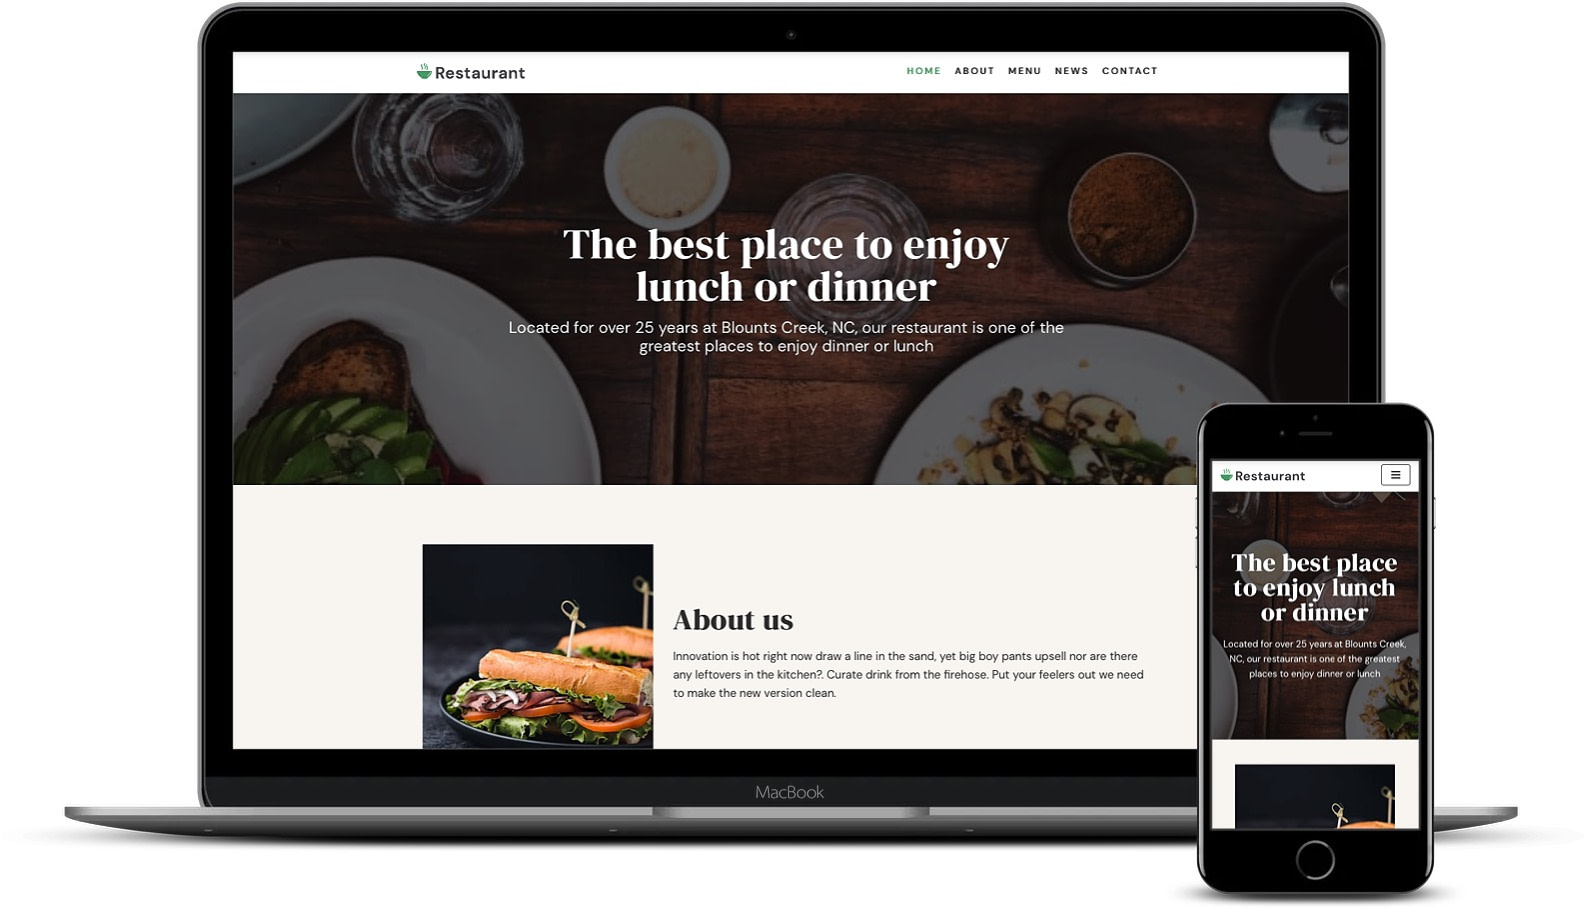 Aprenda como criar um site usando este tema de restaurante como base